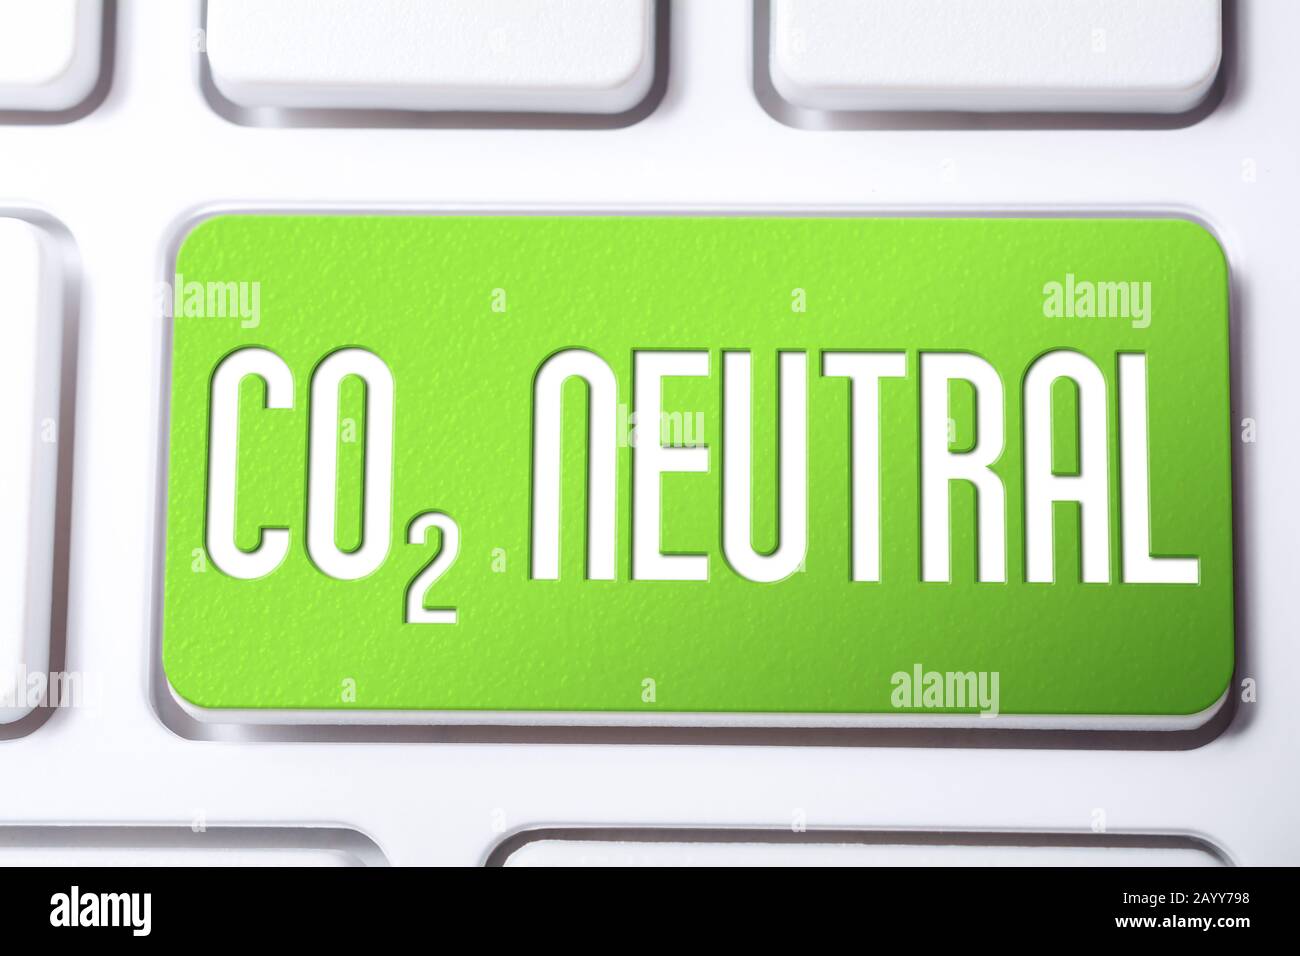 CO2 neutre sur UN bouton vert du clavier, concept de réduction du réchauffement global Banque D'Images